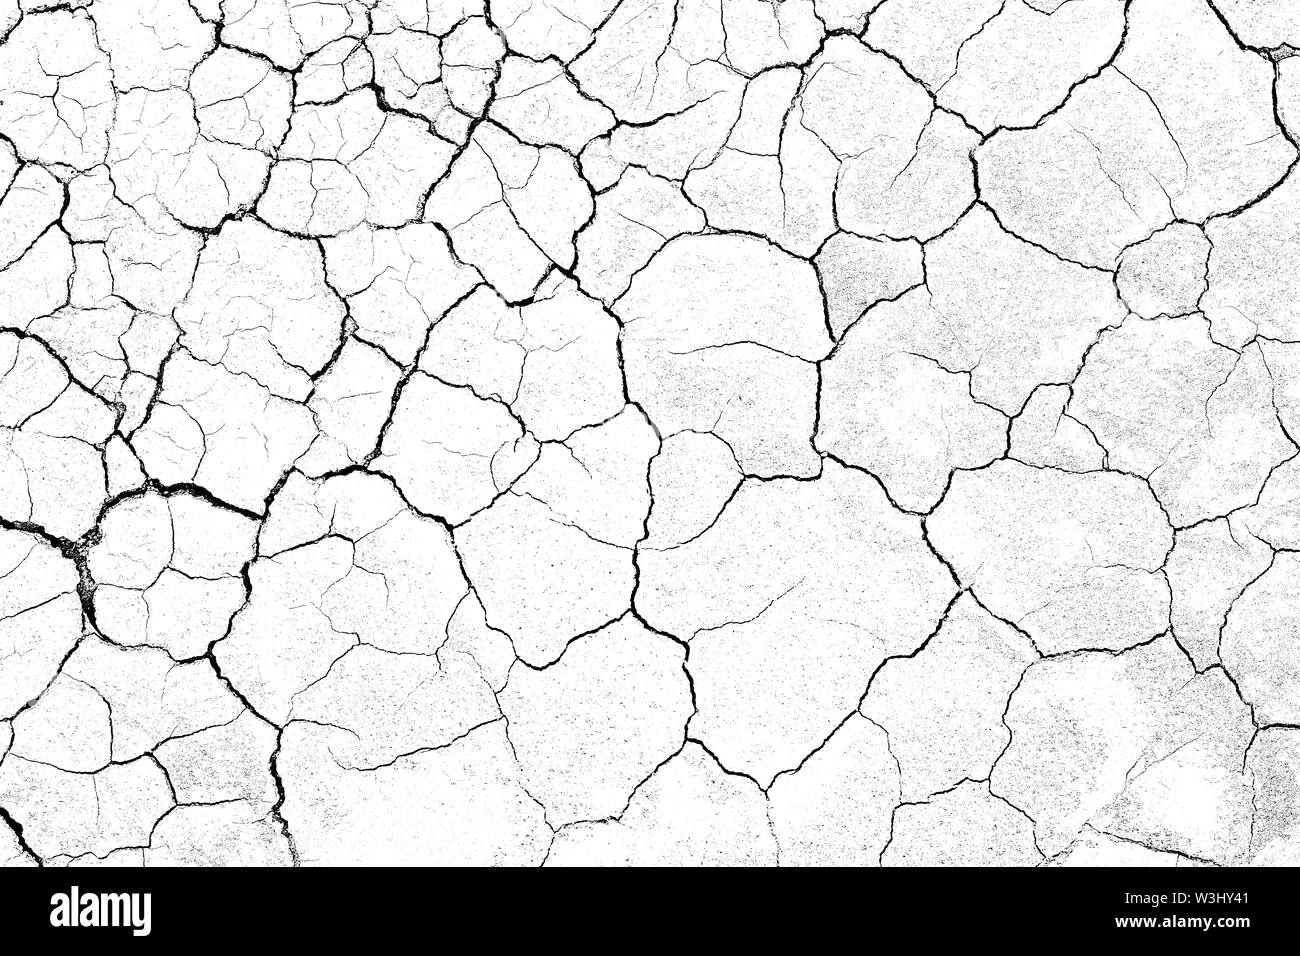 La masse du sol fissuré Structure texture terre sur fond blanc, des fissures à la surface du désert, la sécheresse dans les zones arides, terres a de nombreuses rainures et des rayures Banque D'Images